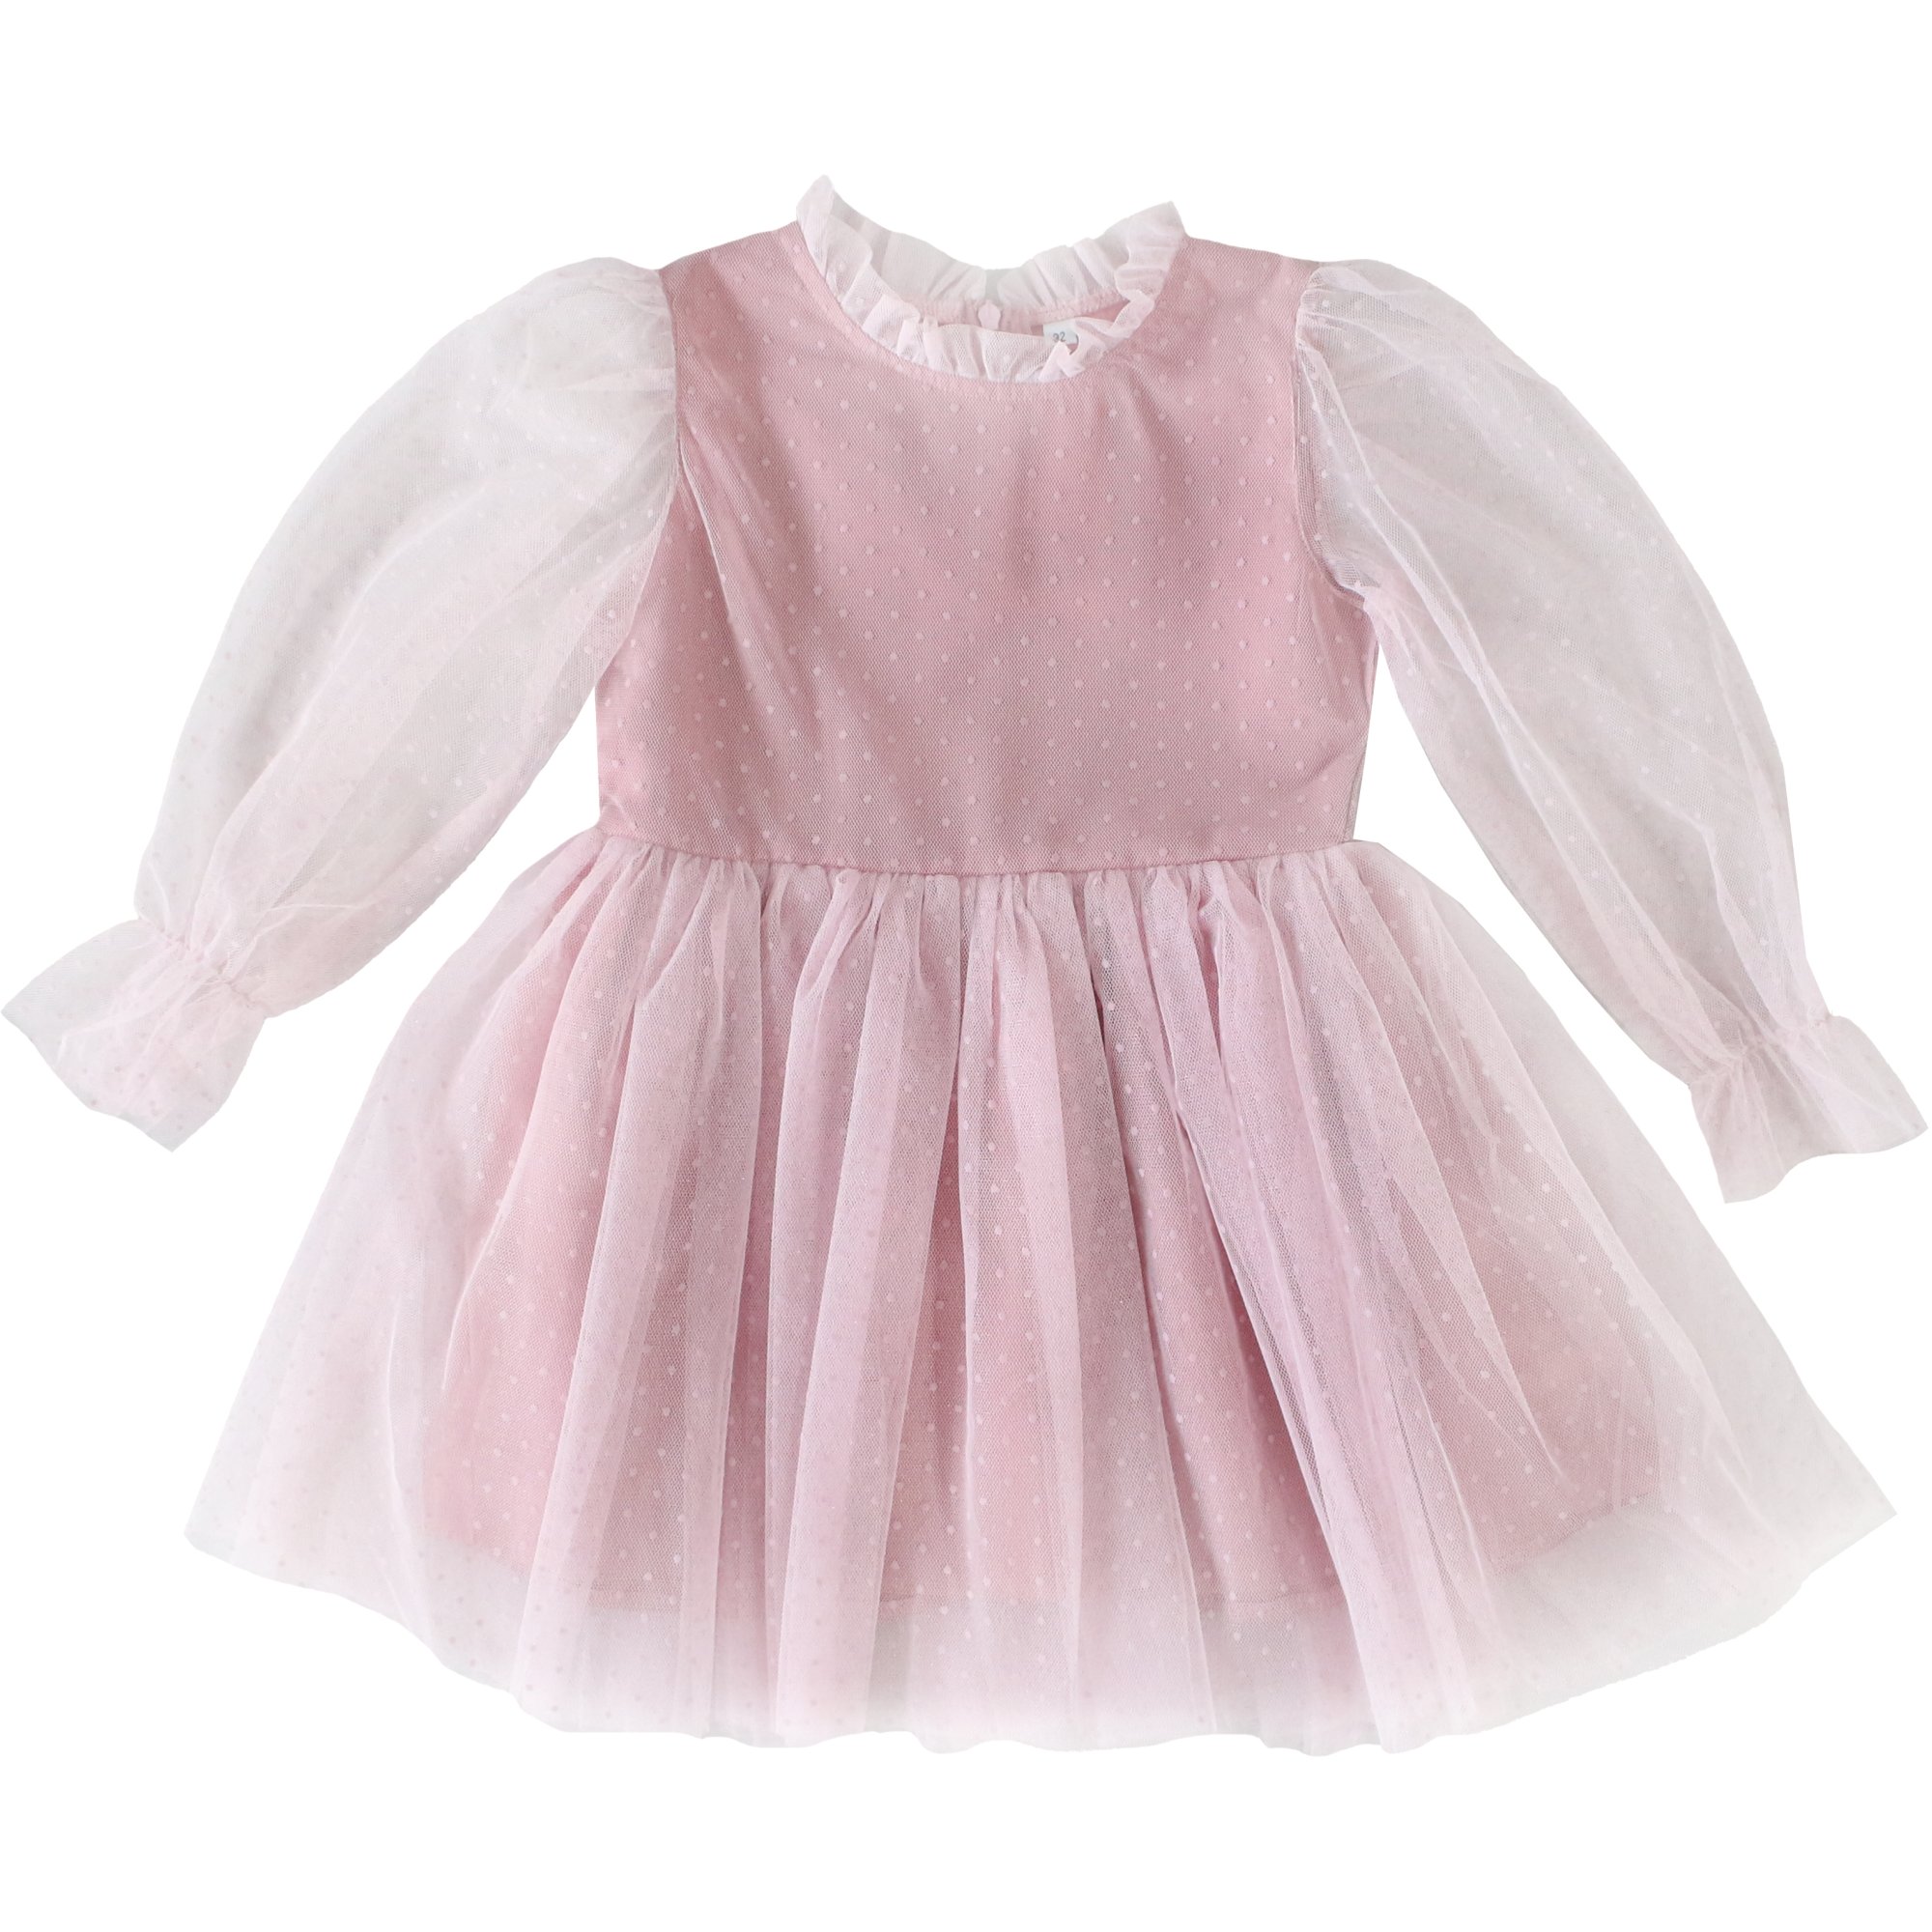 Платье д/р 116 Горох сетка розовый 5301